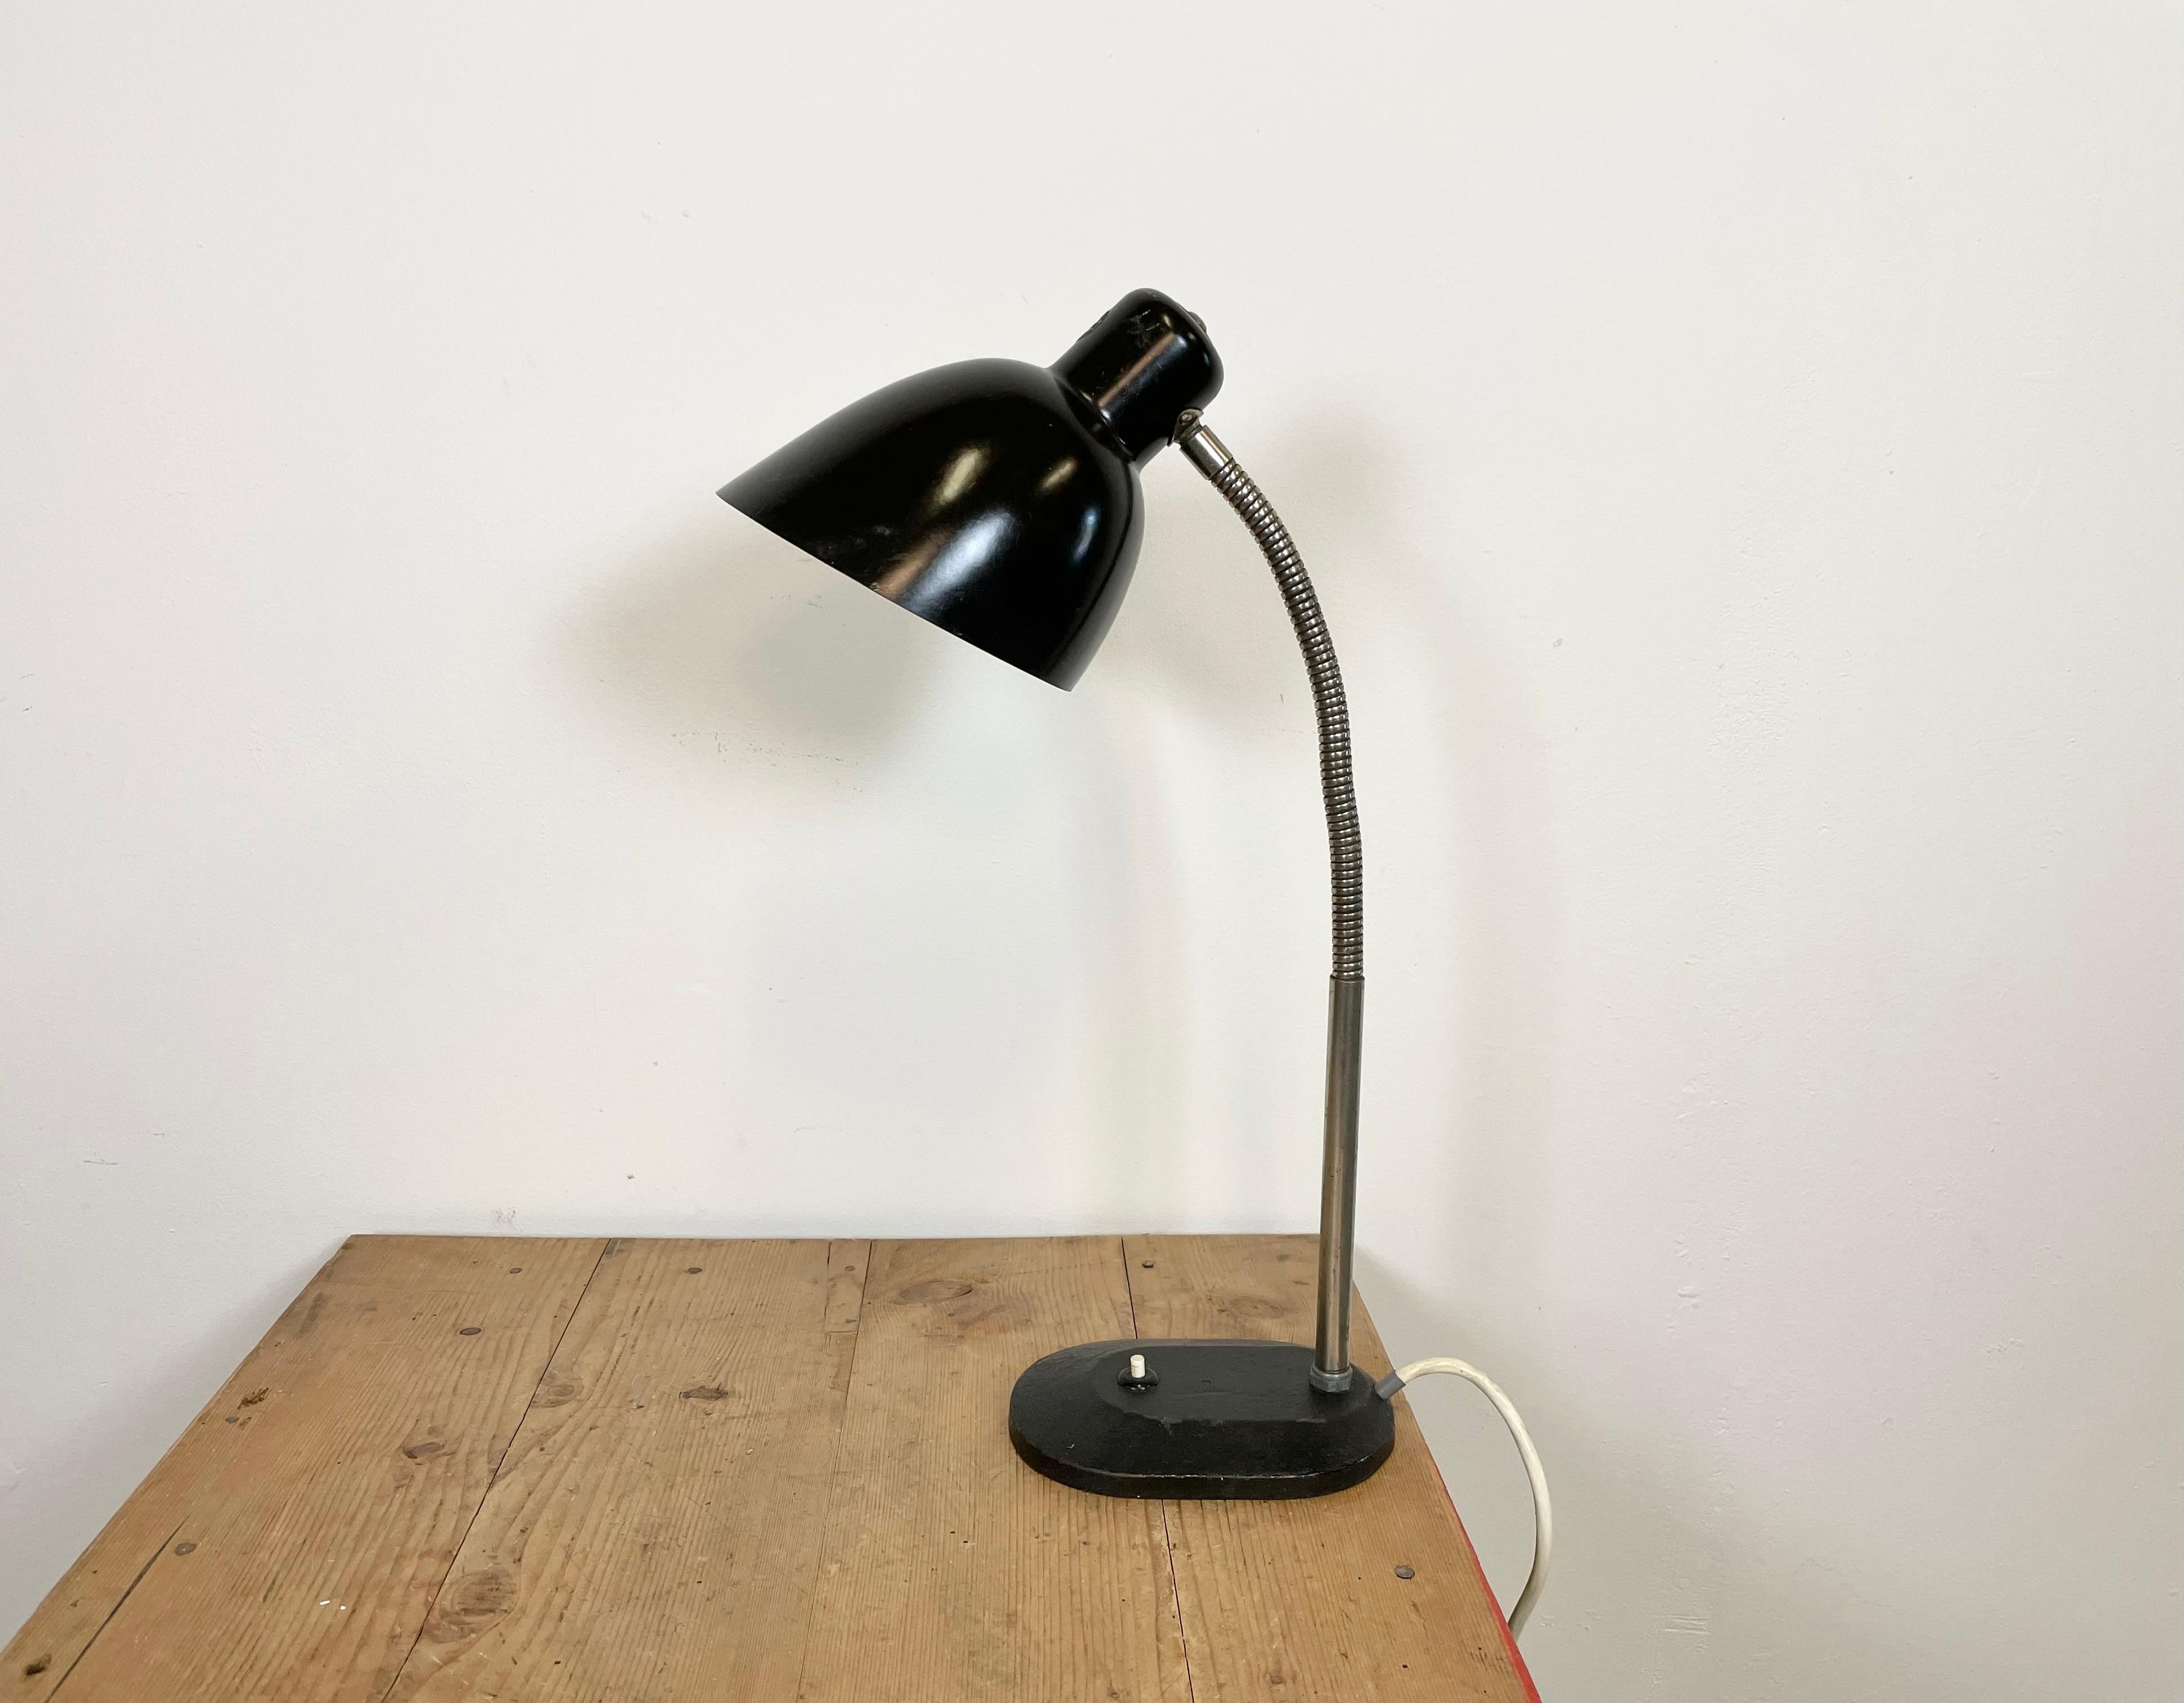 Lampe de bureau vintage allemande en bakélite de style Bauhaus, avec un abat-jour en bakélite noire, un col de cygne chromé et une base en fonte avec interrupteur d'origine. La douille est prévue pour des ampoules E 27. Le diamètre de l'abat-jour